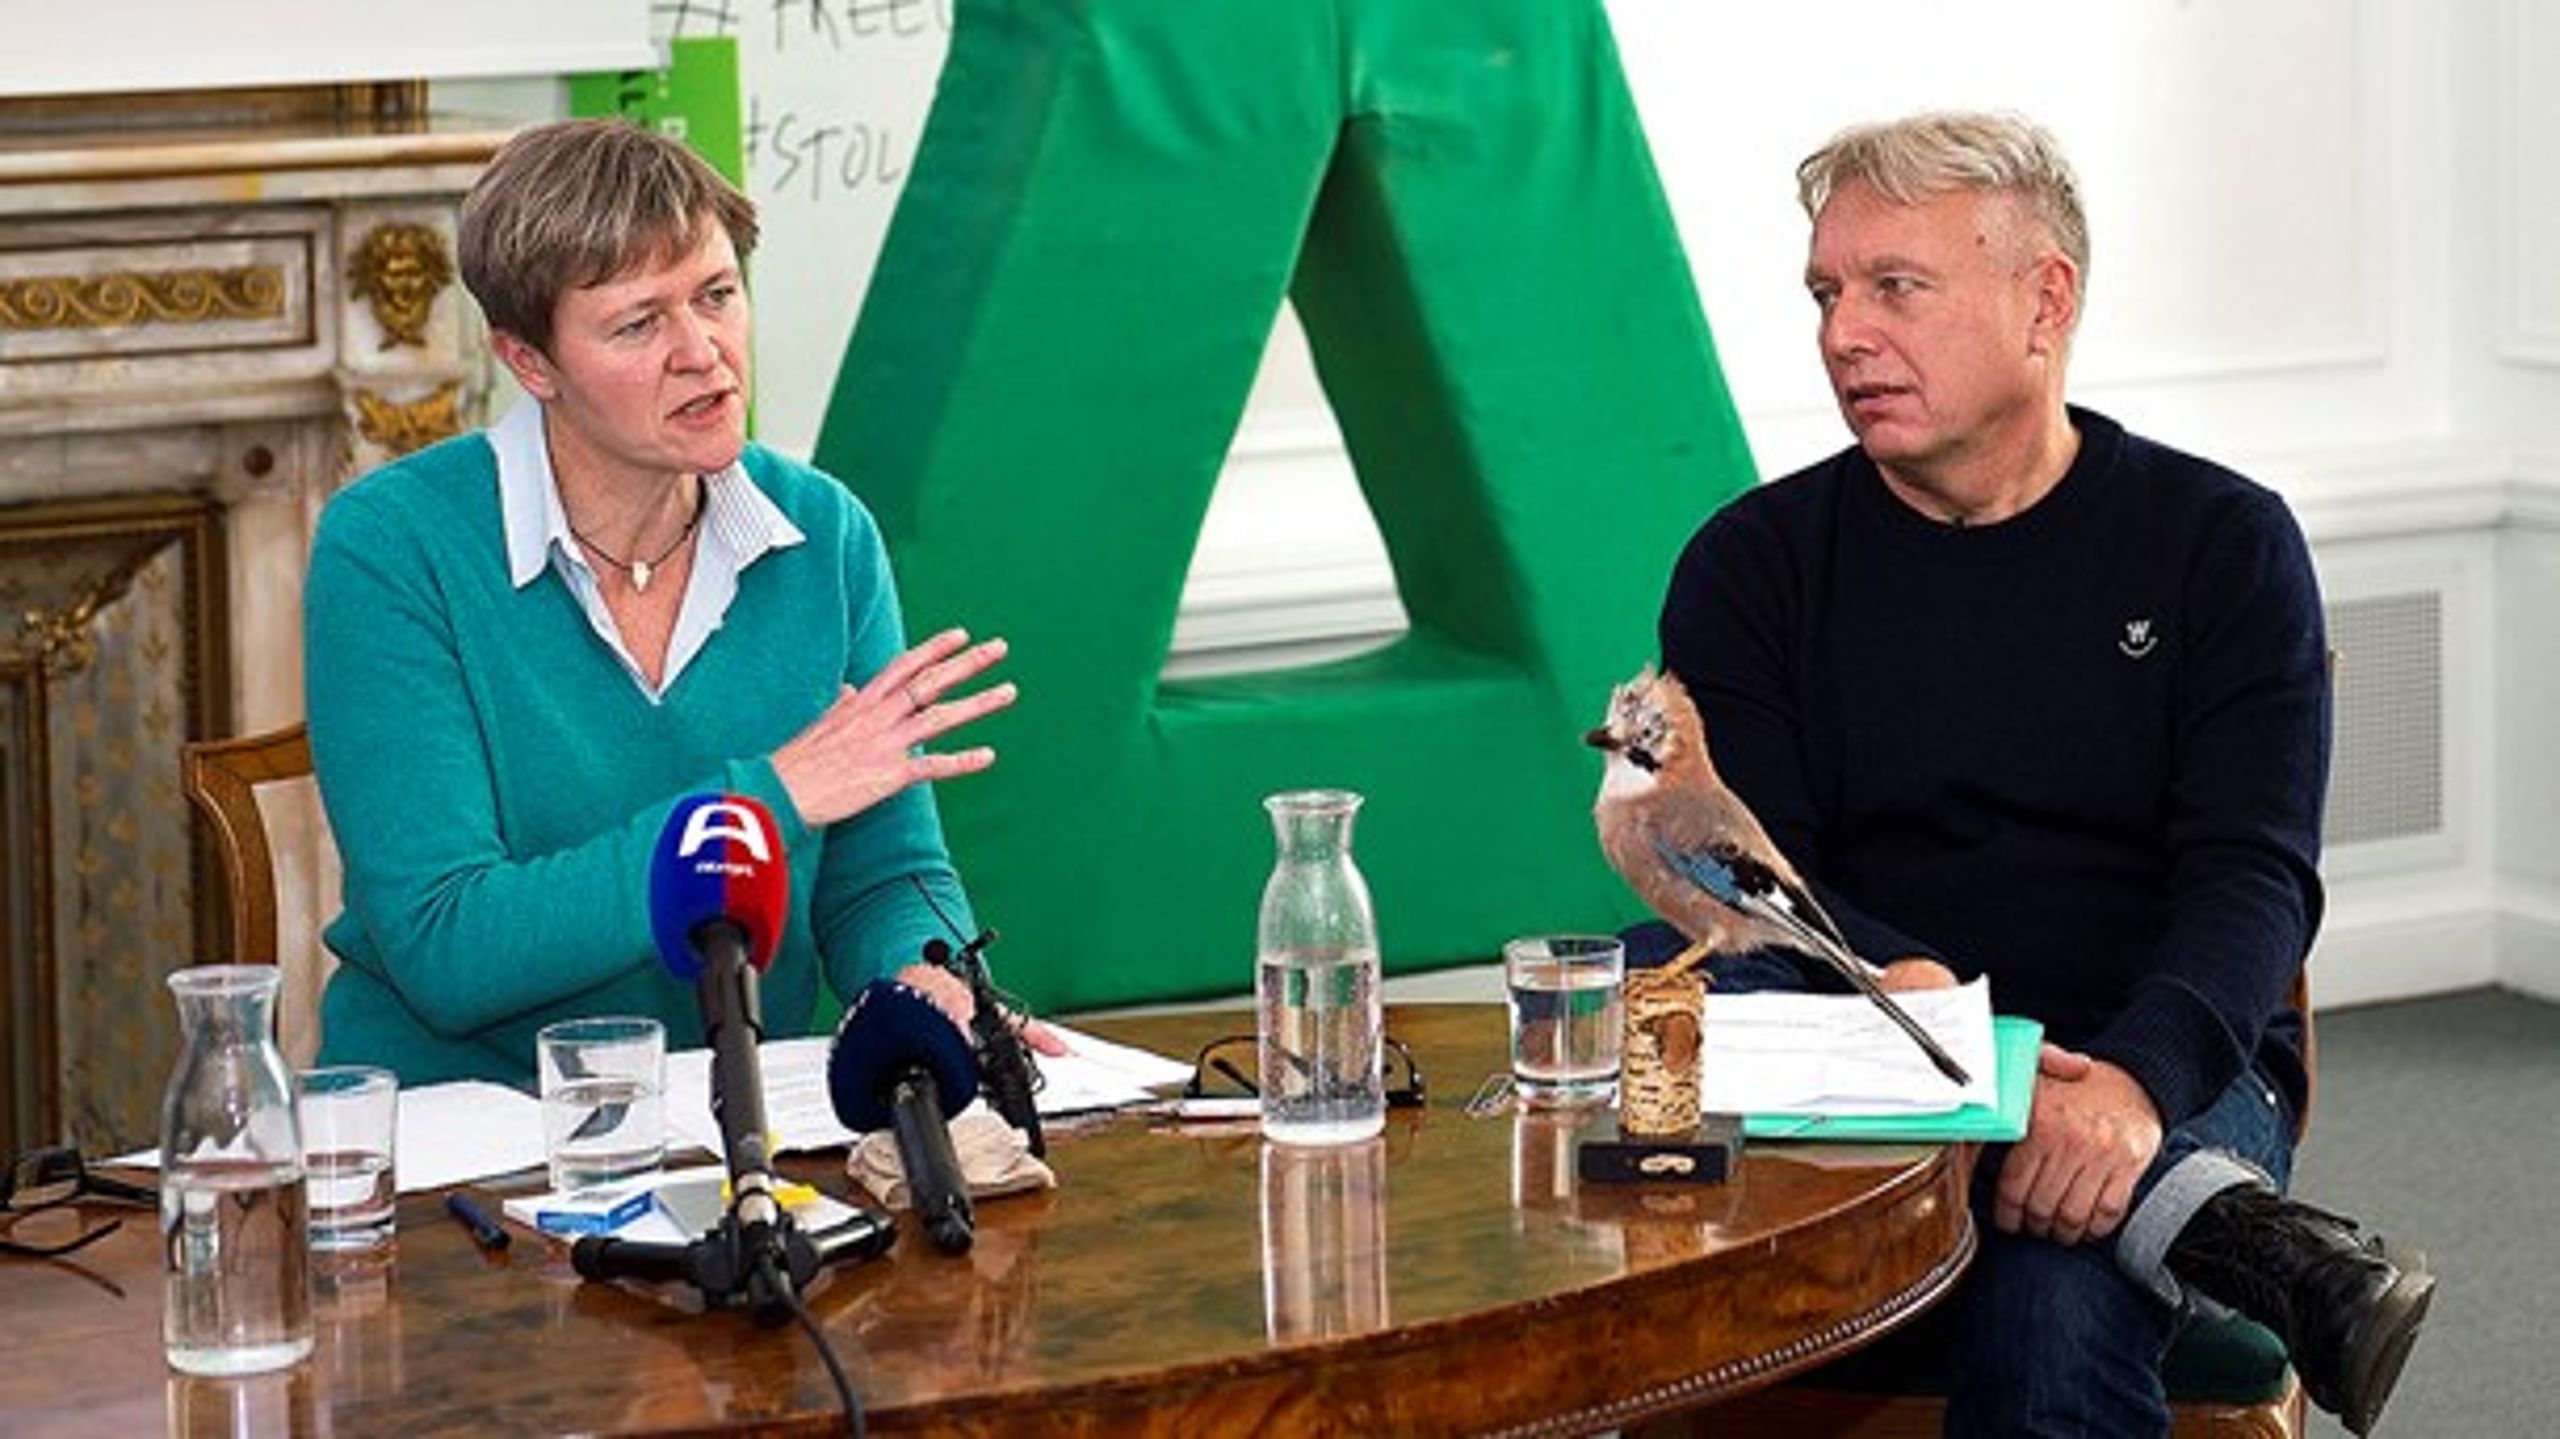 Josephine Fock går efter posten som politisk leder af Alternativet efter Uffe Elbæk.